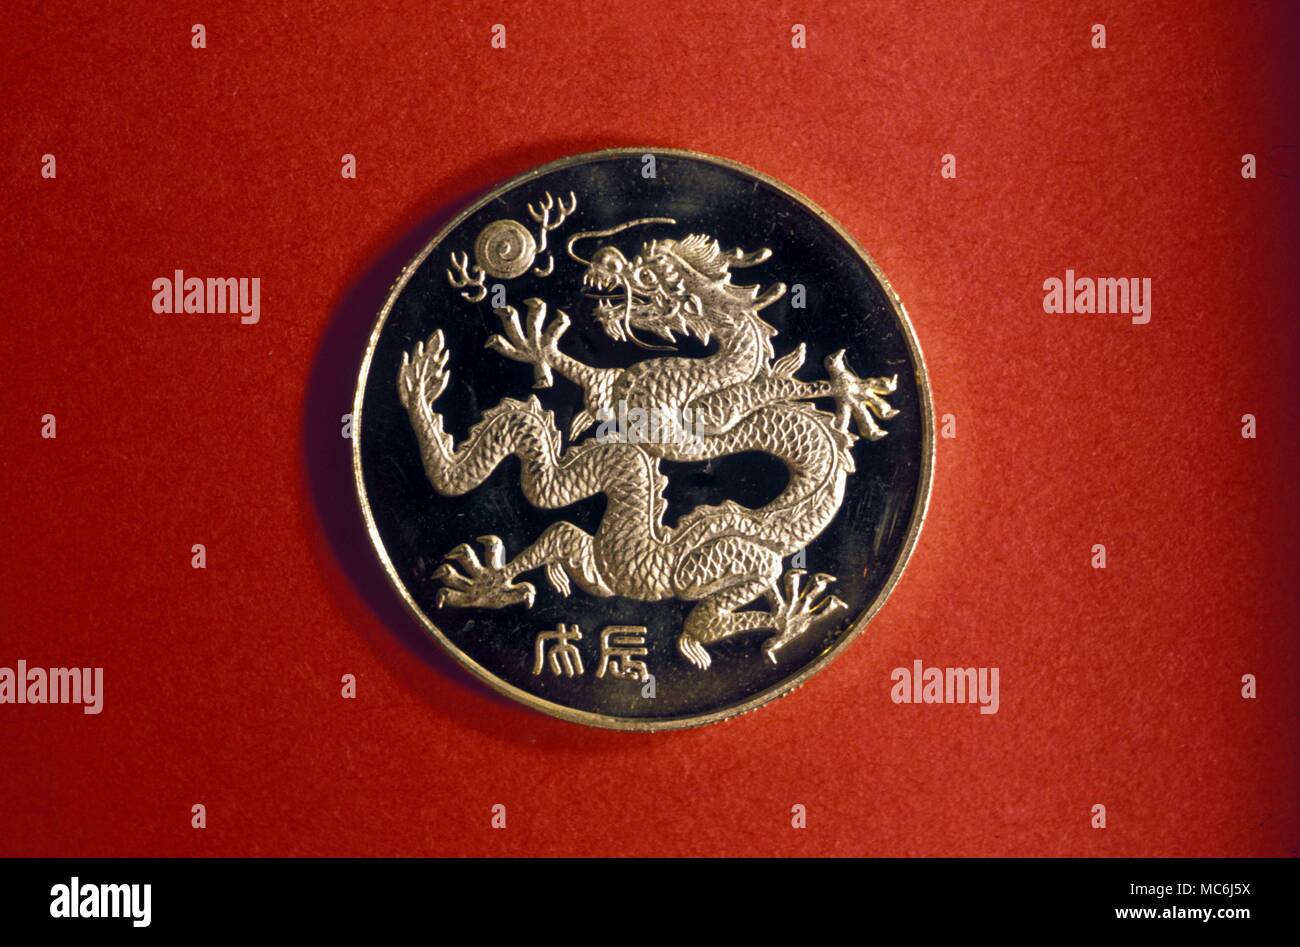 Chinesische Astrologie der Drache der chinesischen symbolische Tier entspricht das Tierkreiszeichen Löwe moderne Medaille in Peking gekauft Stockfoto